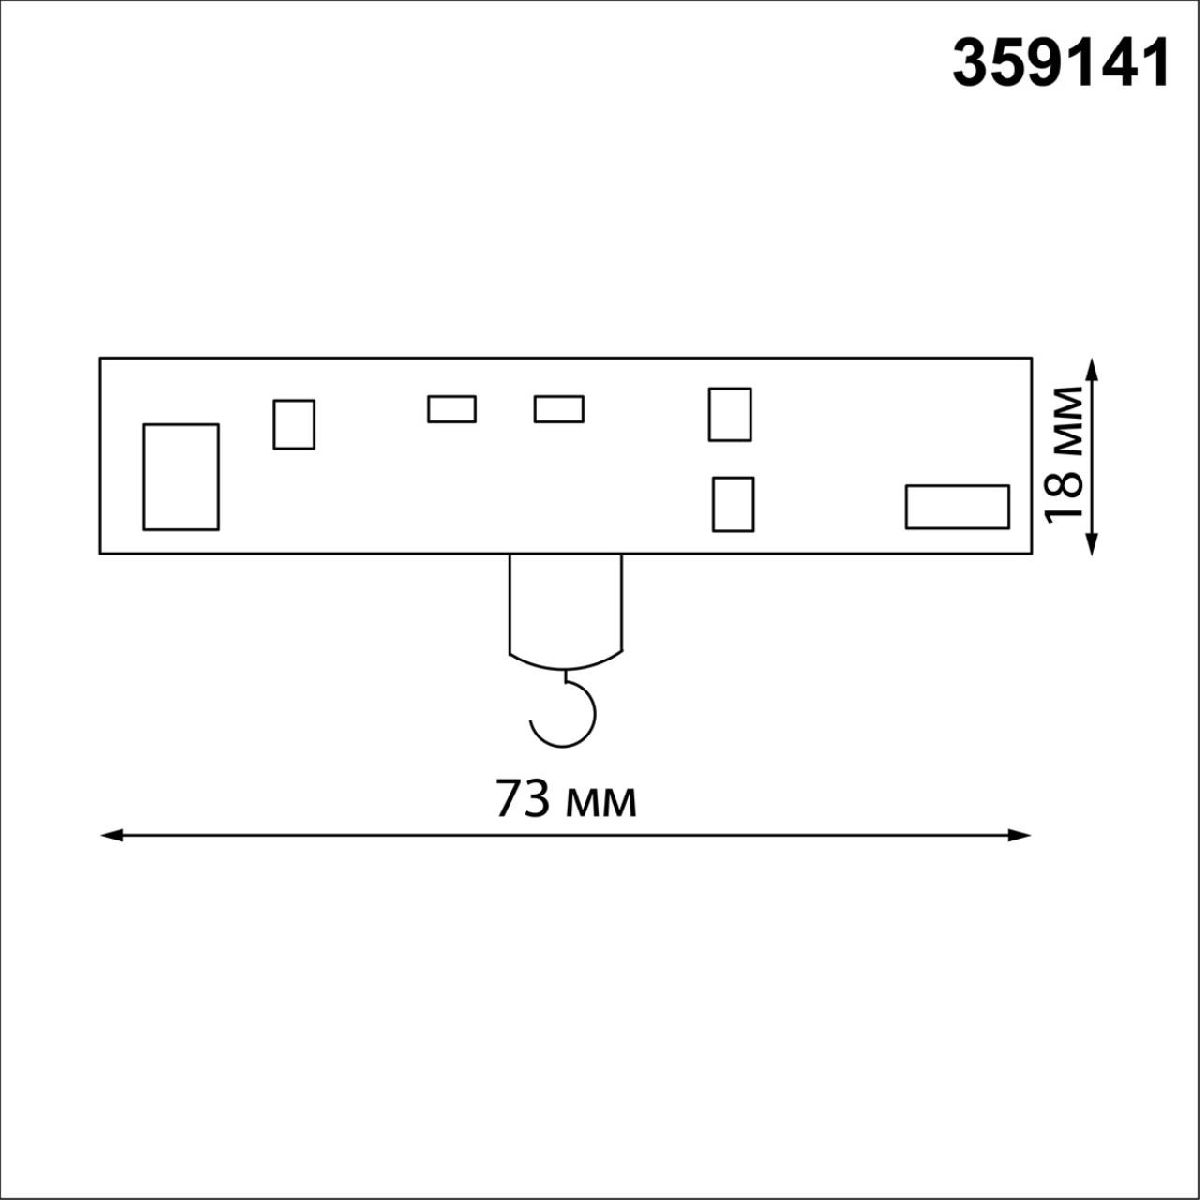 Адаптер/держатель для низковольтного трека без токопровода для арт. 359137-359140 Novotech Ramo 359141